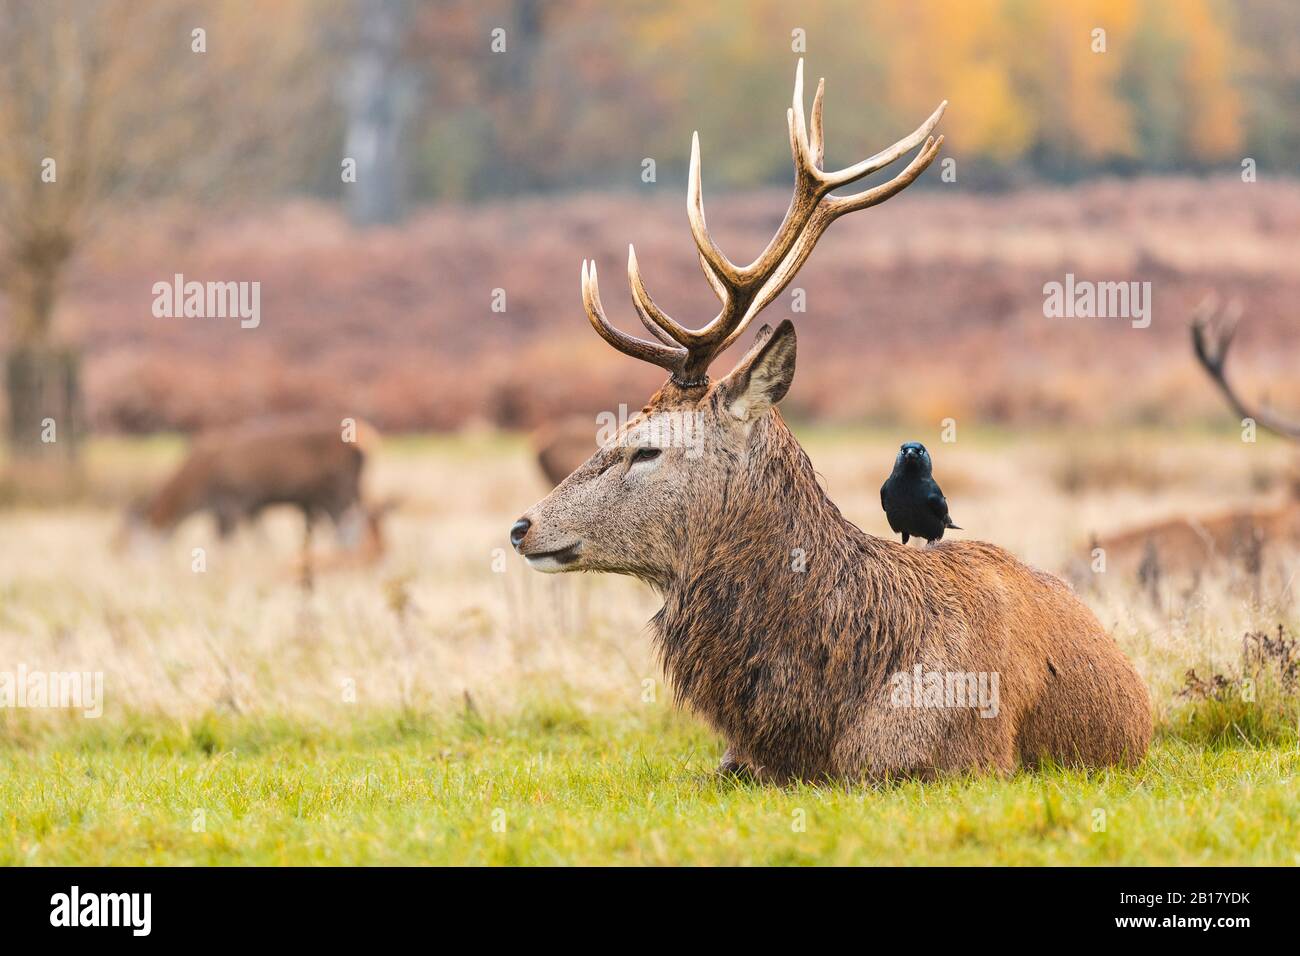 Reino Unido, Inglaterra, Londres, pájaro parado detrás de ciervo descansando en el césped en Richmond Park Foto de stock